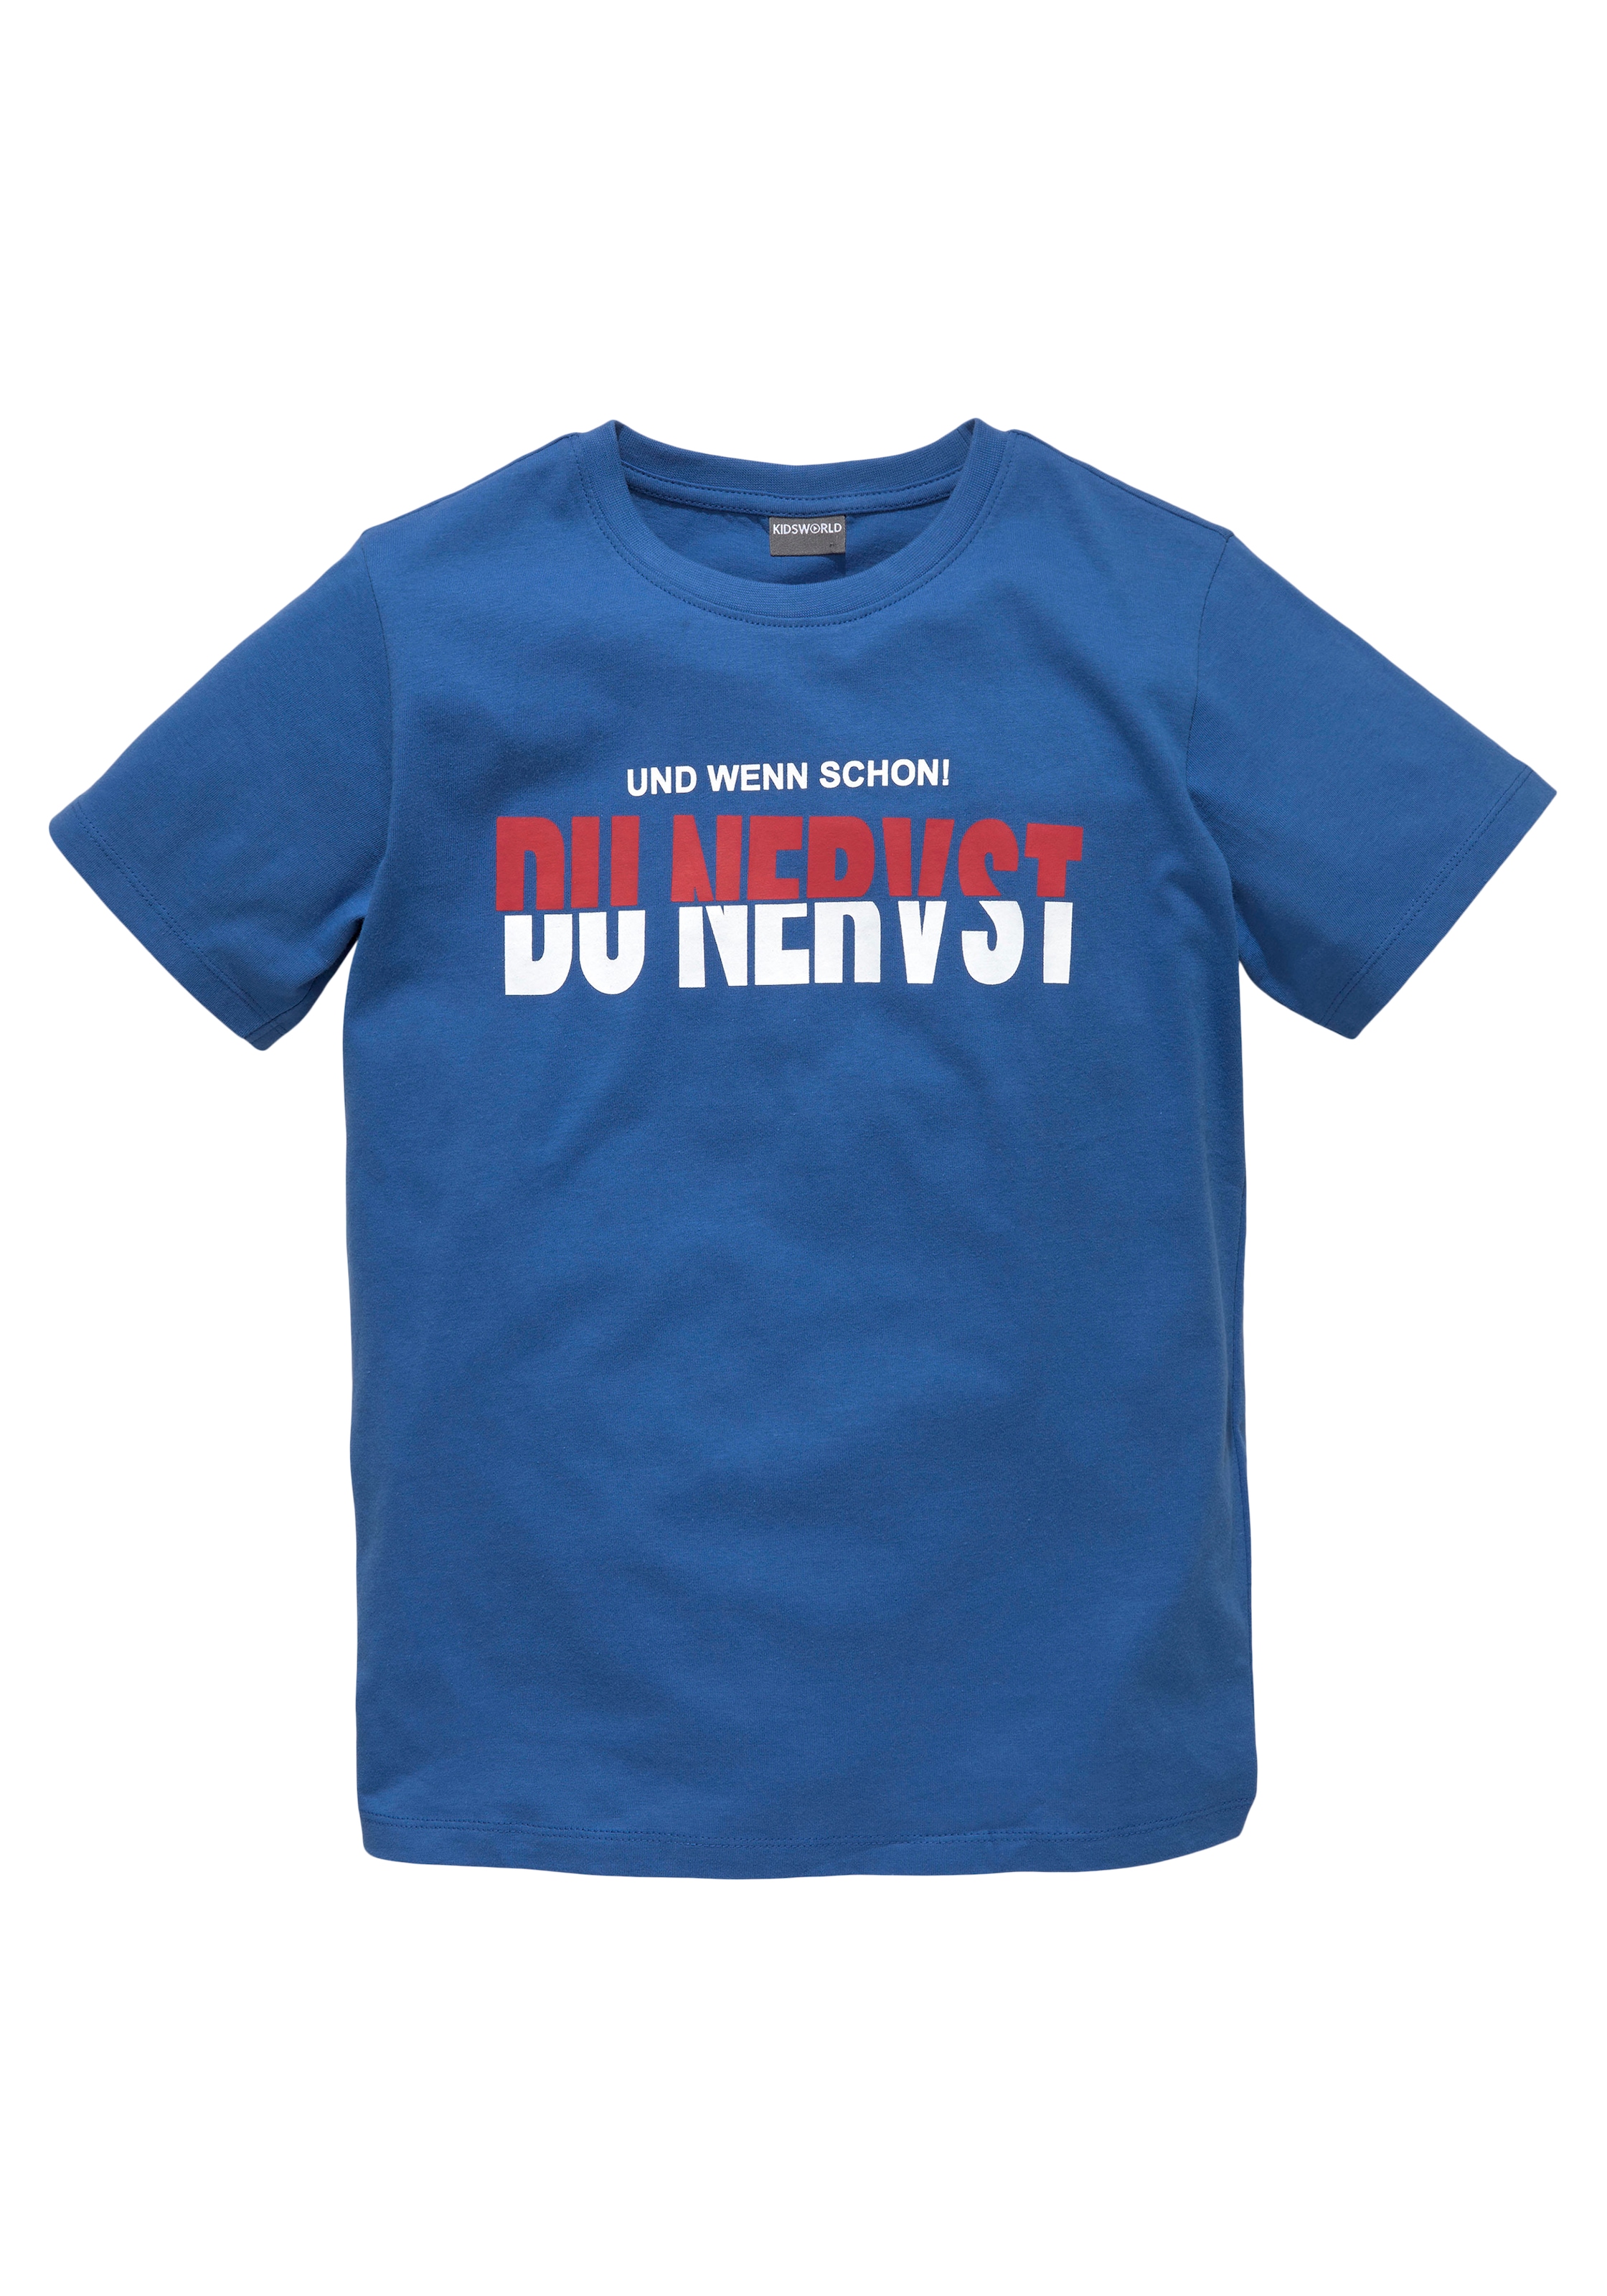 KIDSWORLD T-Shirt »DU NERVST«, OTTO Sprücheshirt bei